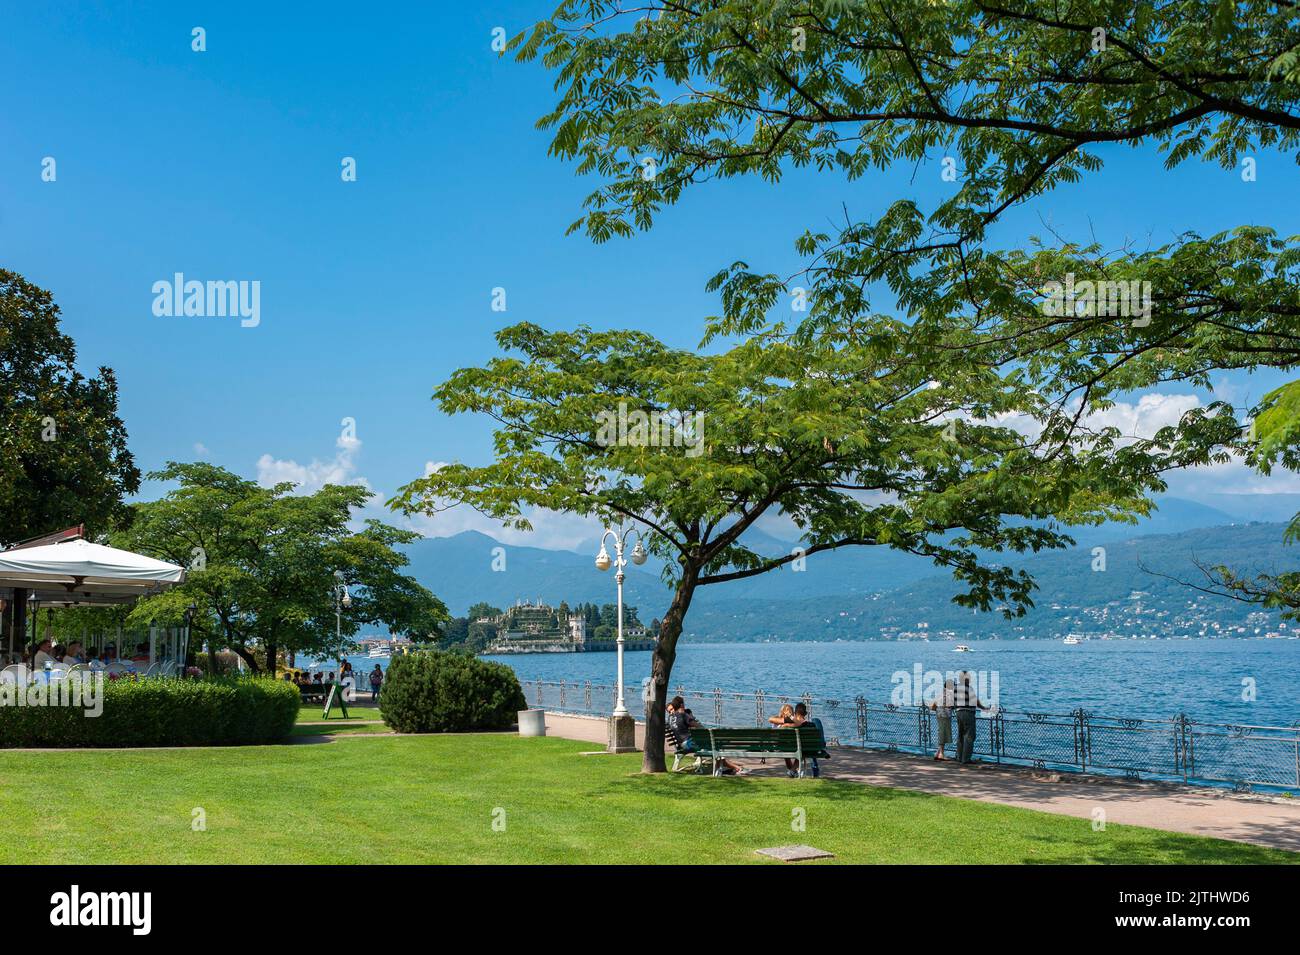 Promenade on Lake Maggiore, in the background Isola Bella, Stresa, Lake Maggiore, Piedmont, Italy, Europe Stock Photo